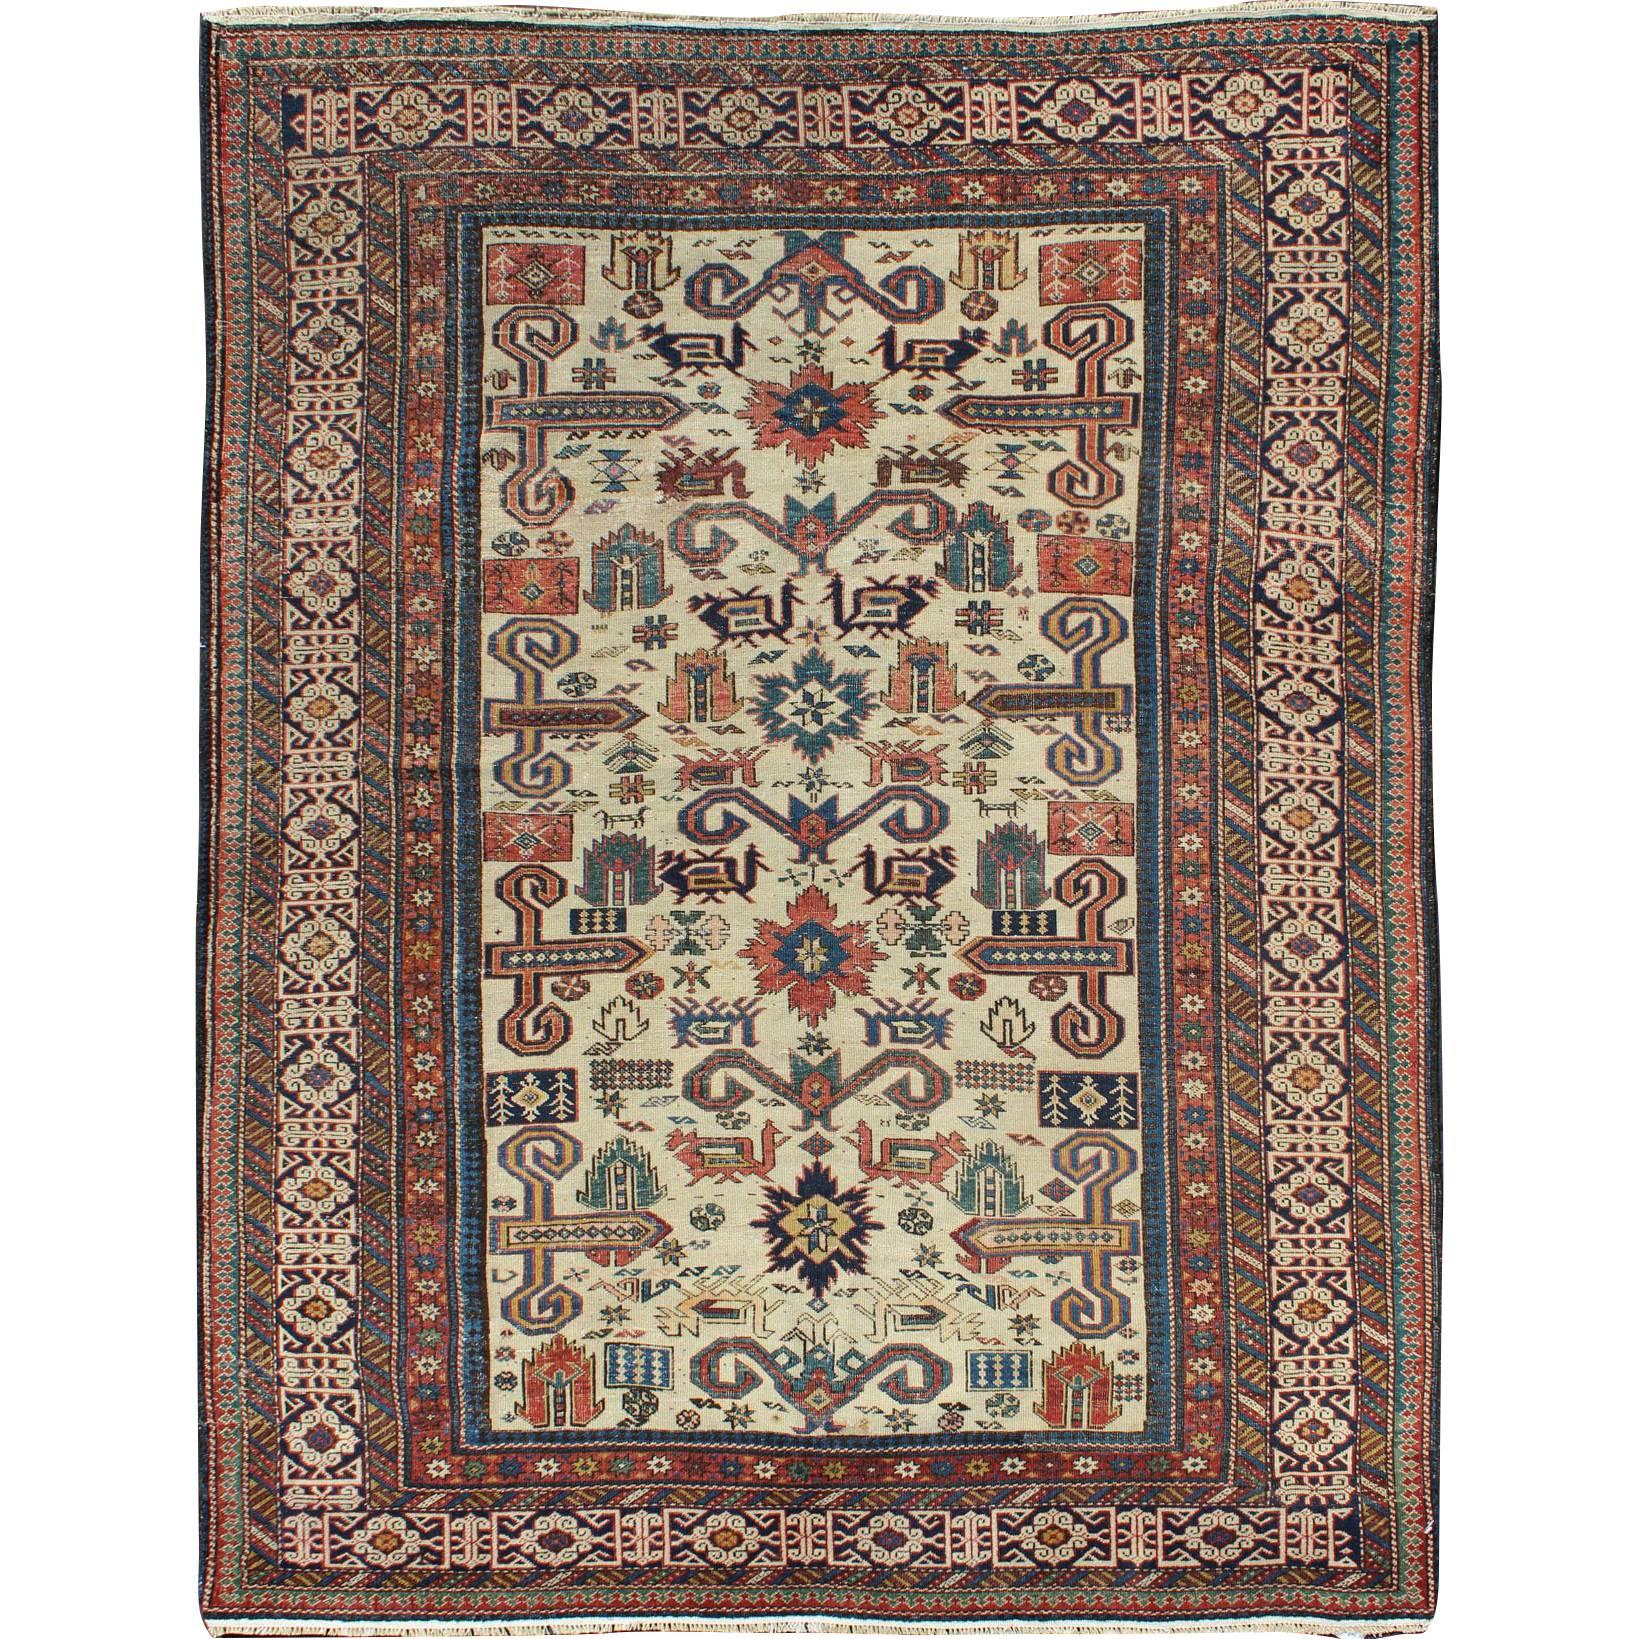 Antique tapis caucasien prépédois à fond ivoire de la fin du 19ème siècle